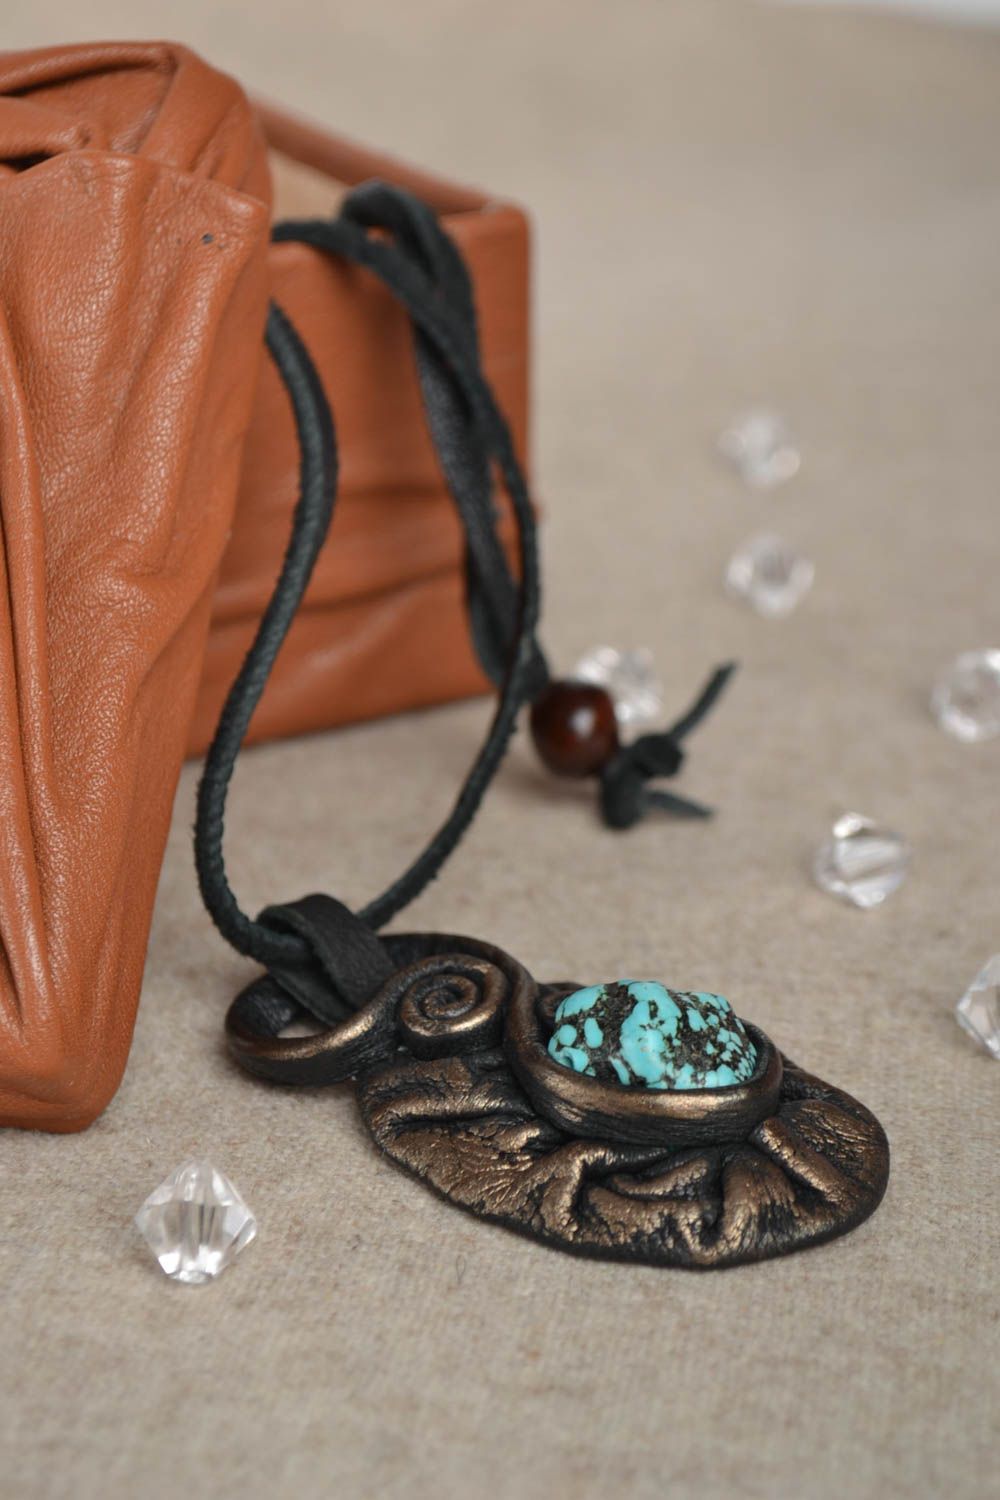 Pendentif en pierre cuir Bijoux fait main Idee cadeau femme design turquoise photo 1